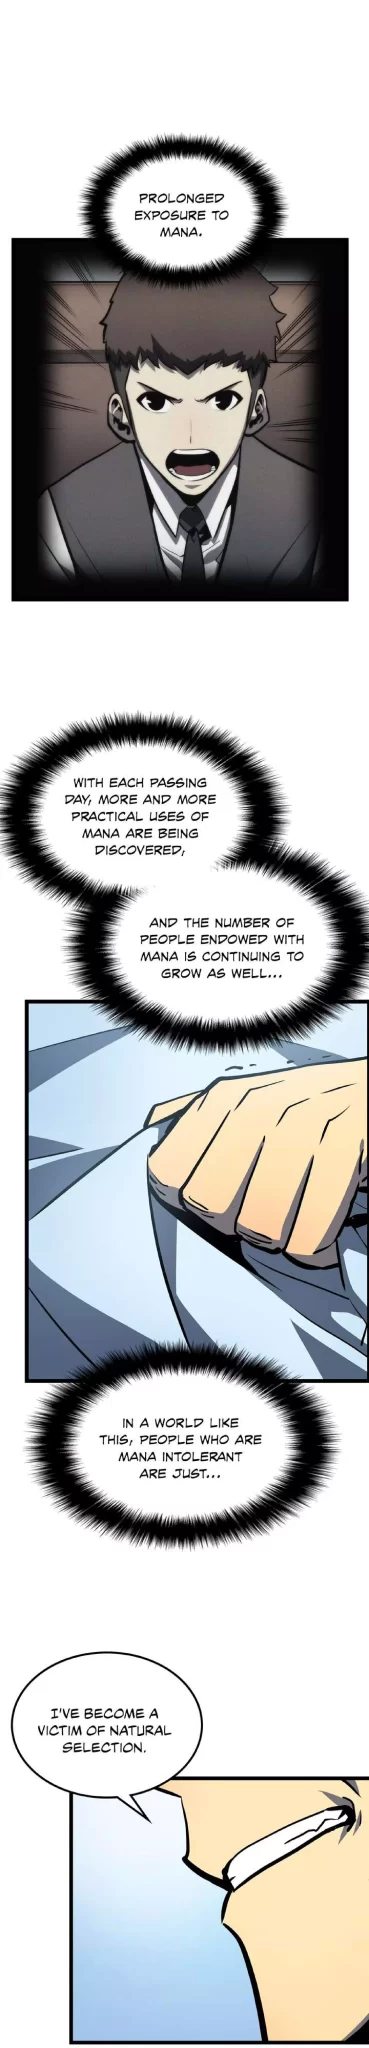 Solo Leveling Manga Manga Chapter - 80 - image 26